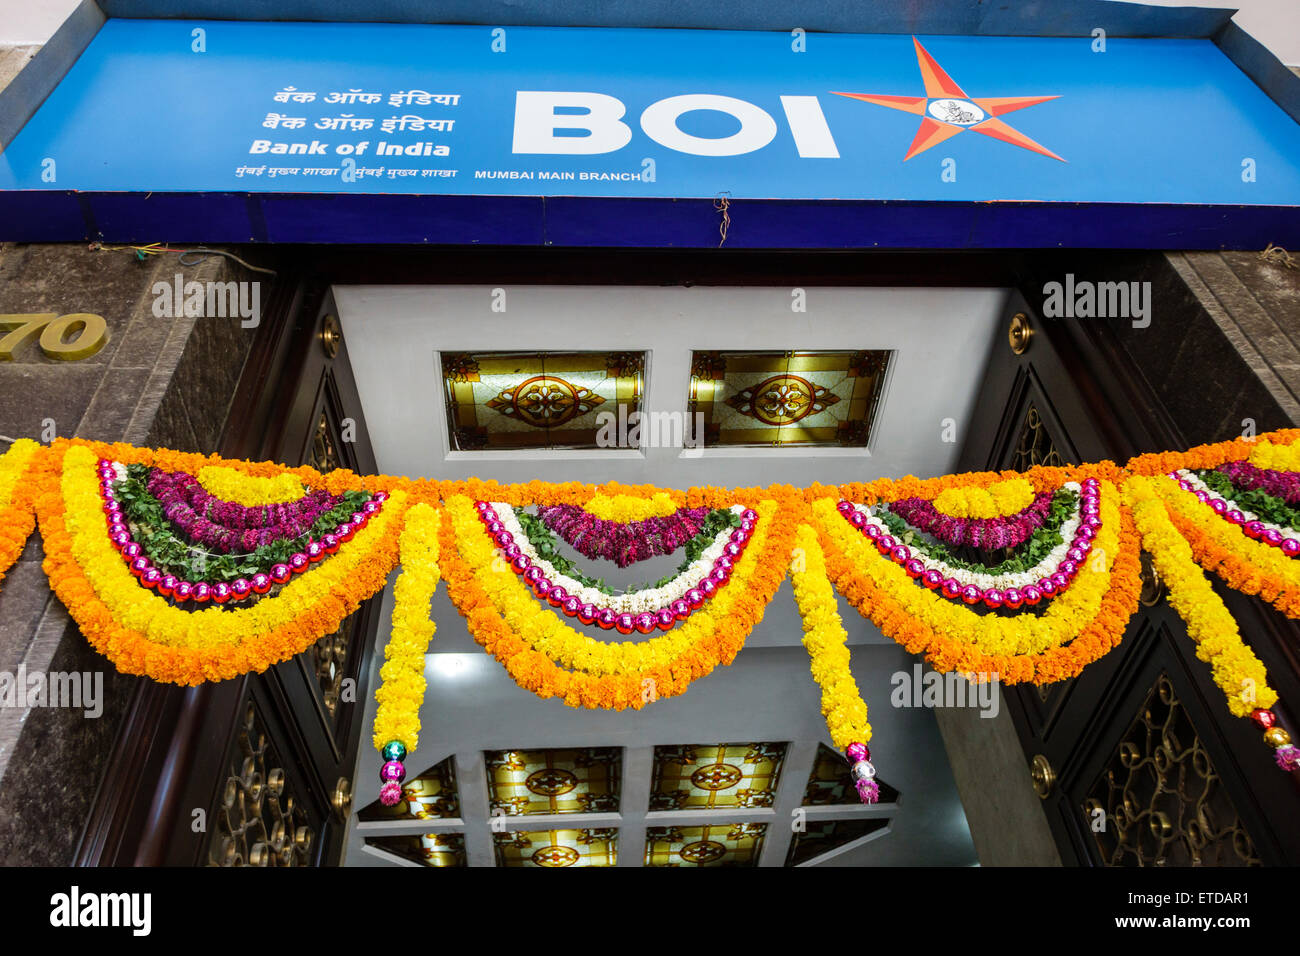 Mumbai India,Fort Mumbai,Kala Ghoda,Bank of India,entrance,flowers,wreaths,India150302011 Stock Photo